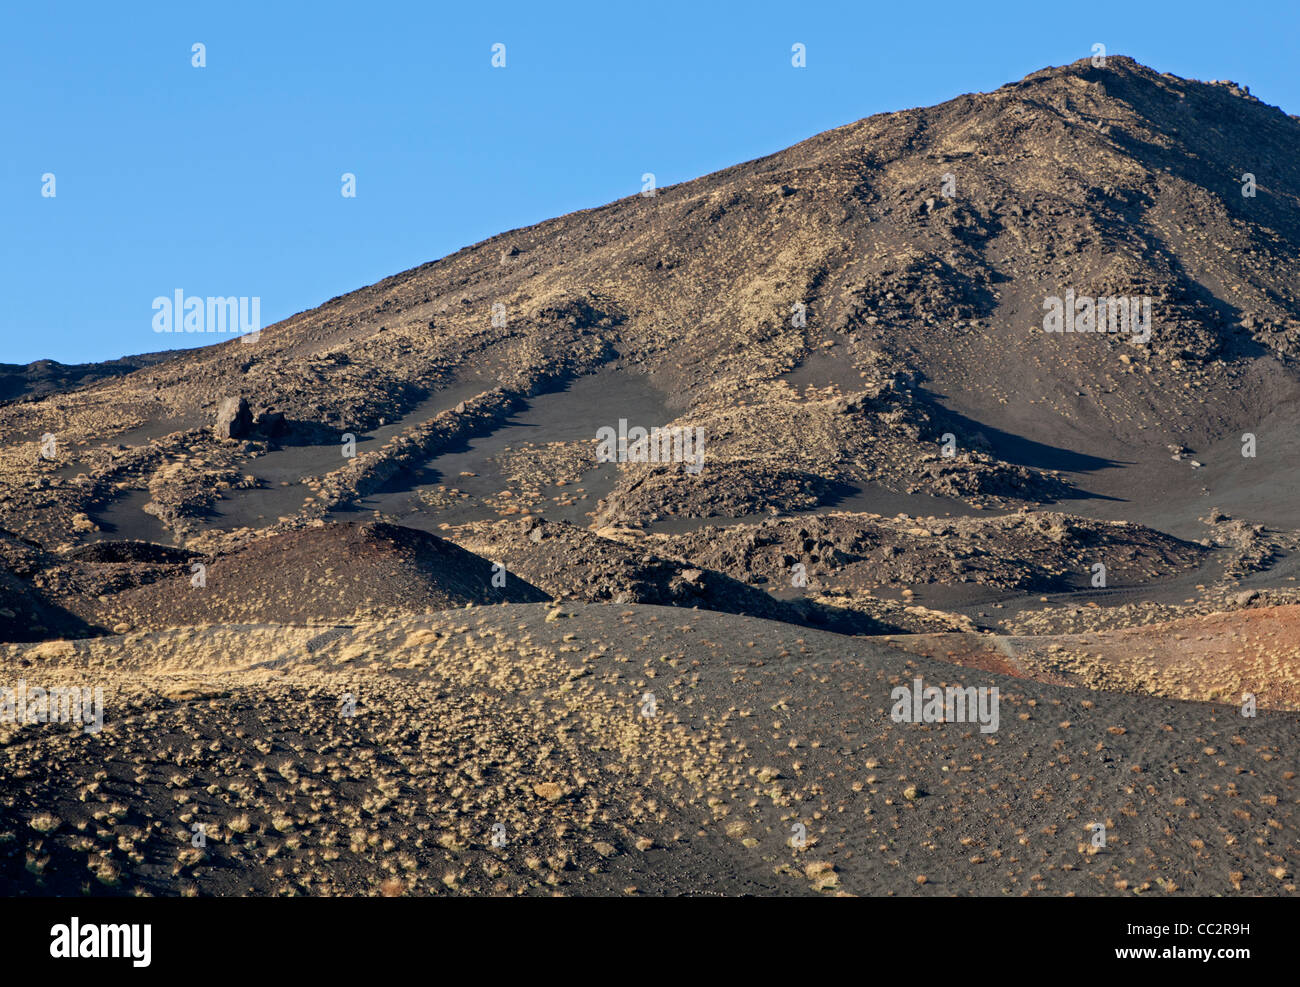 Stream of lava near the Mount Etna, Sicily, Italy Stock Photo